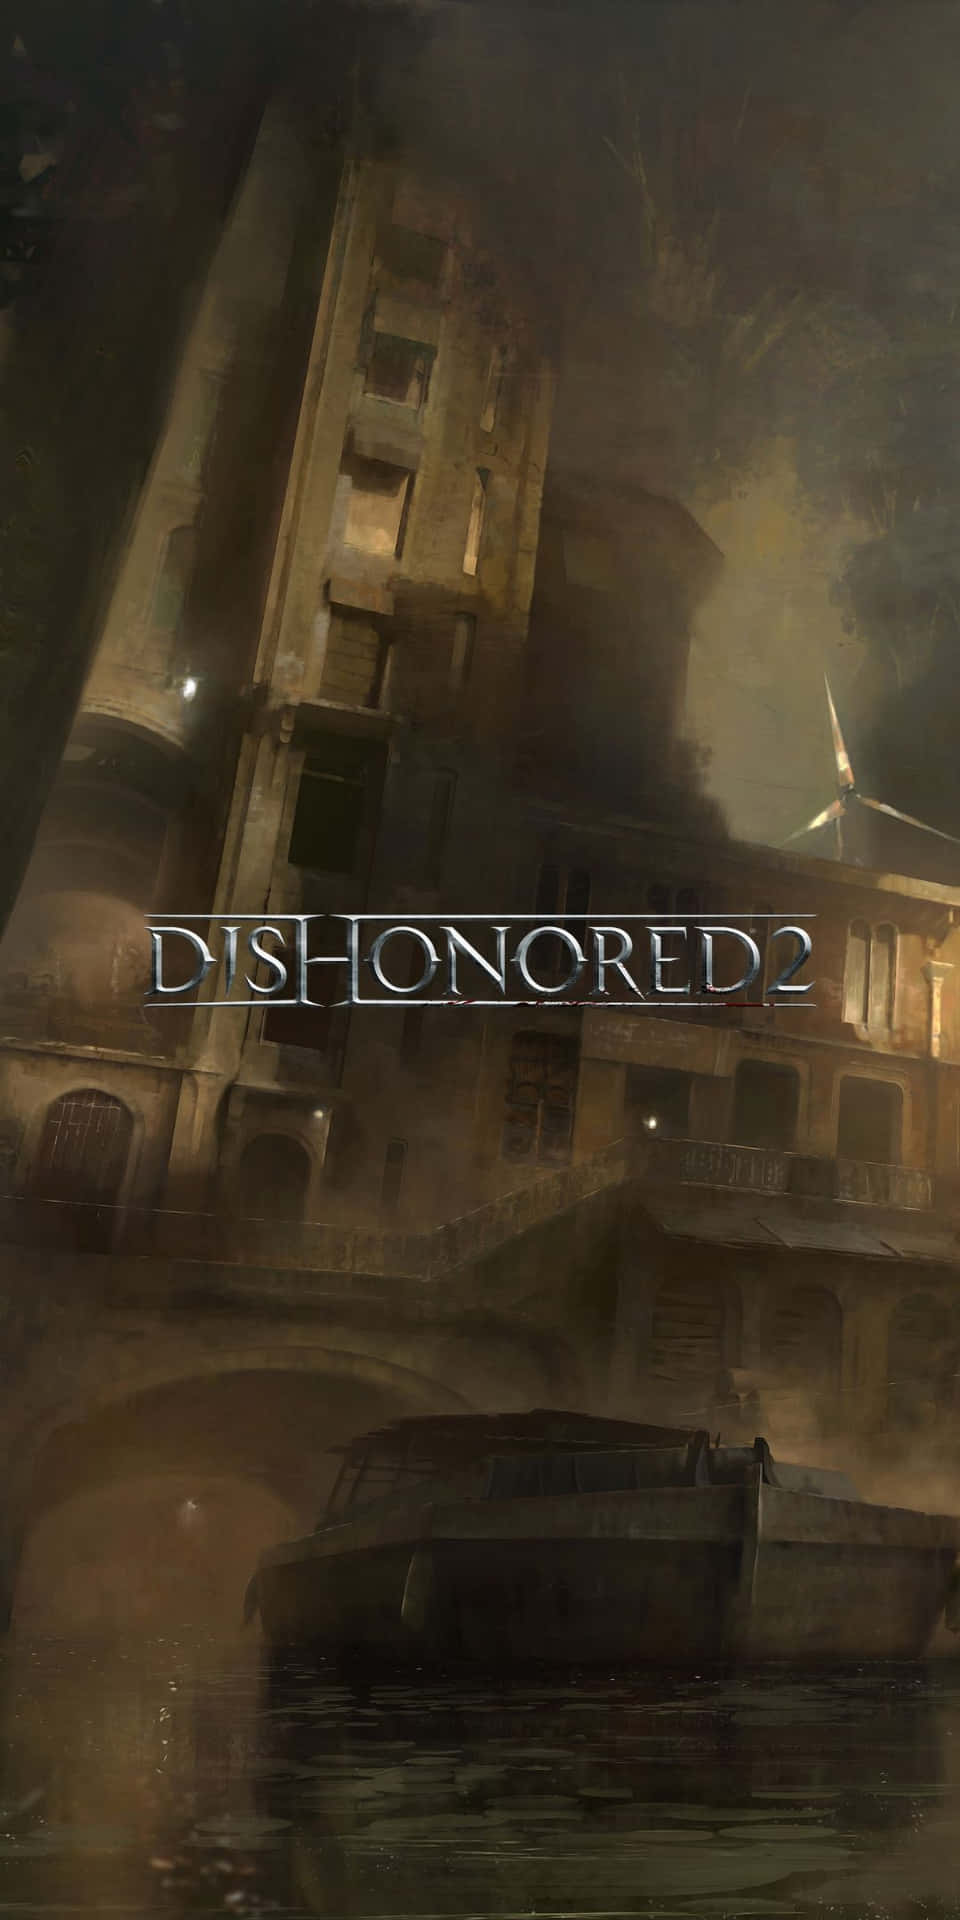 Dishonored2 - Dator - Dator - Dator - Dator - Dator -